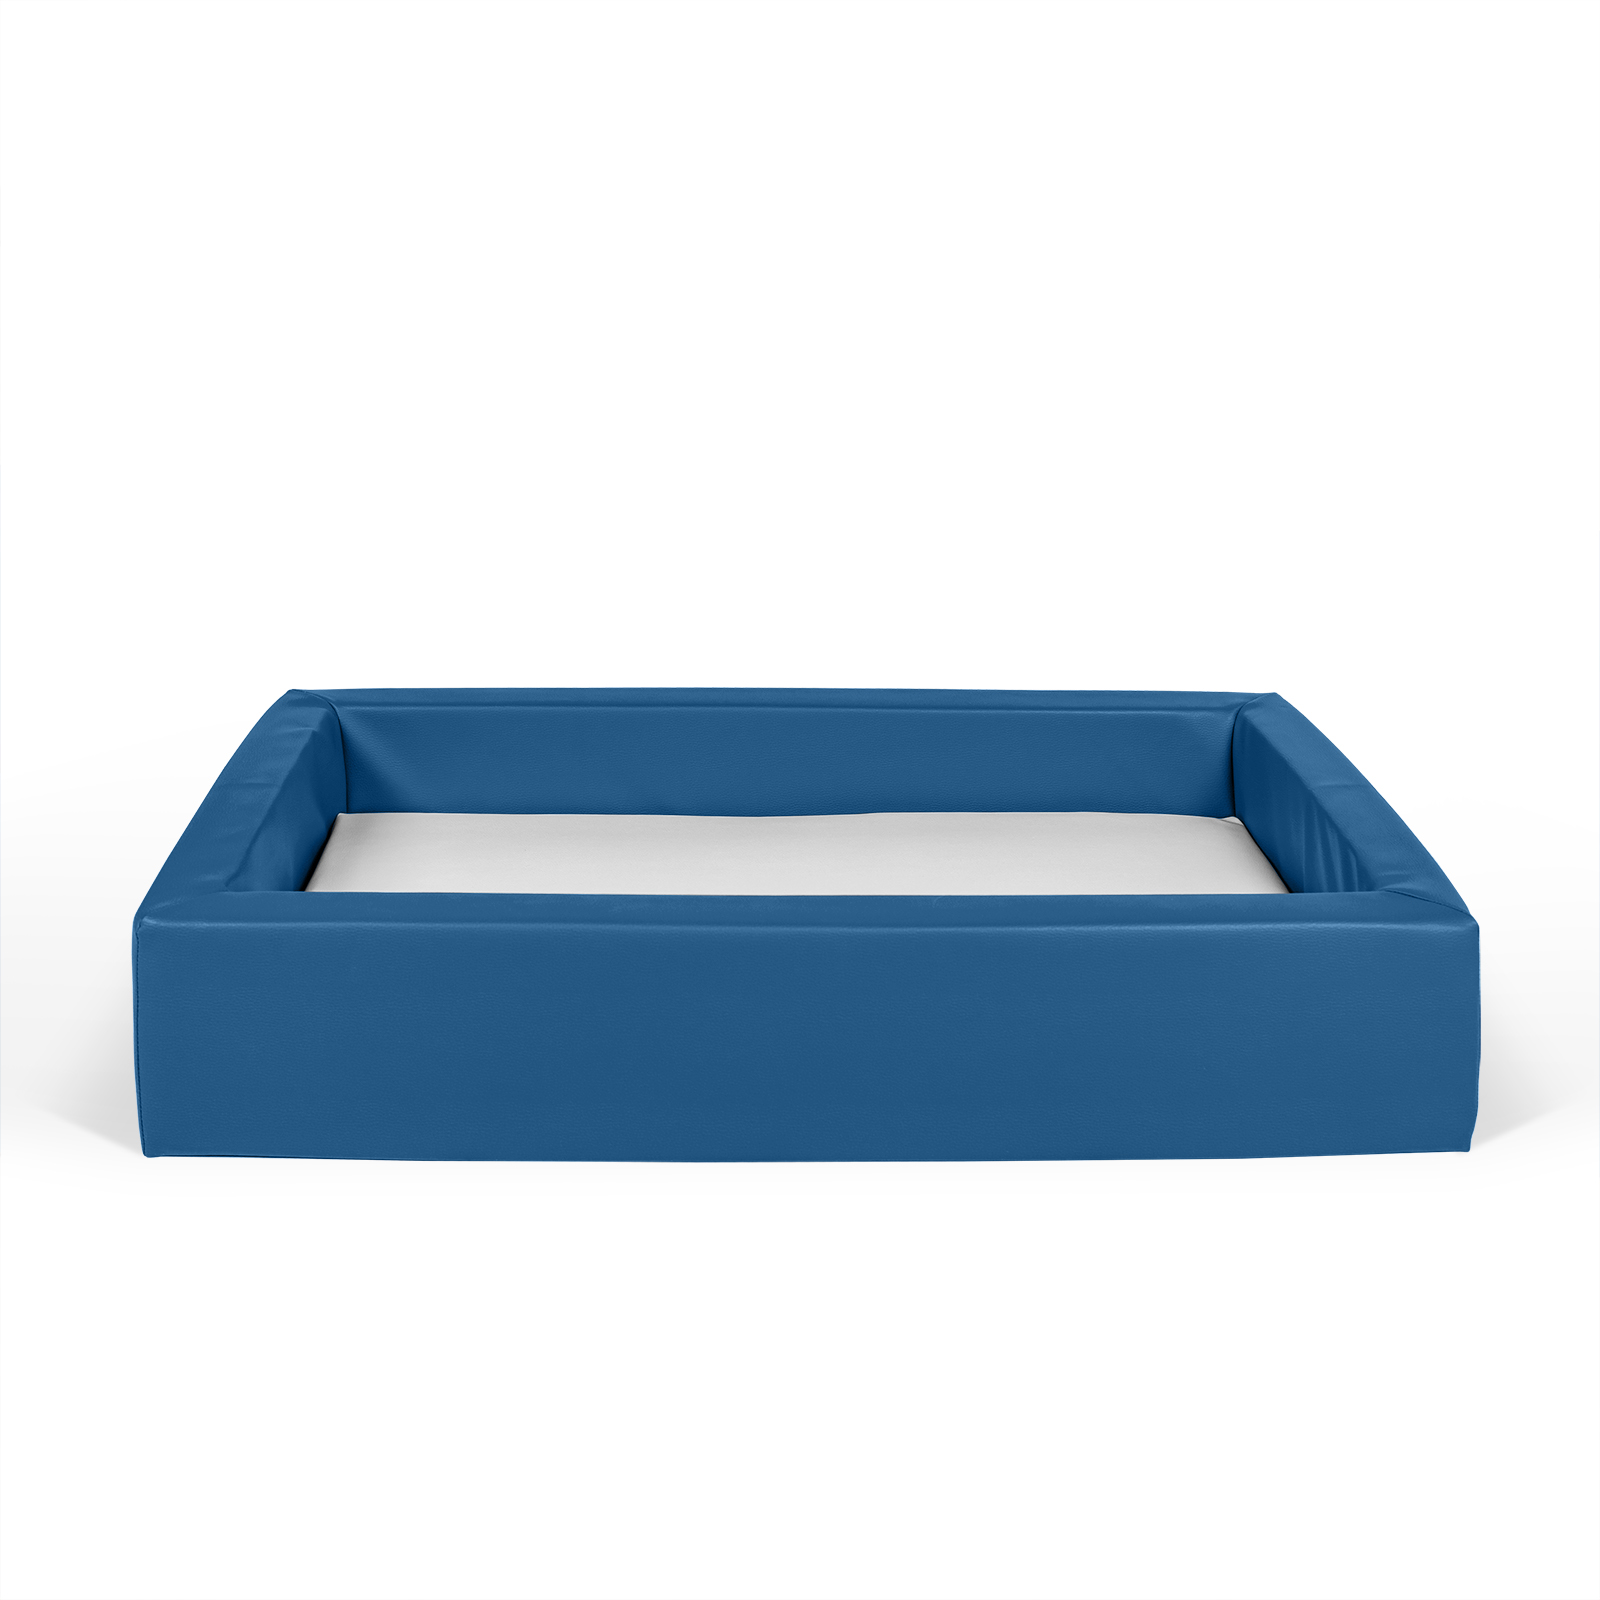 Babybett oder Kinderbett aus Vollschaum bezogen mit Kunstleder blau und einer hygienischen Matratze in Kunstleder weiß